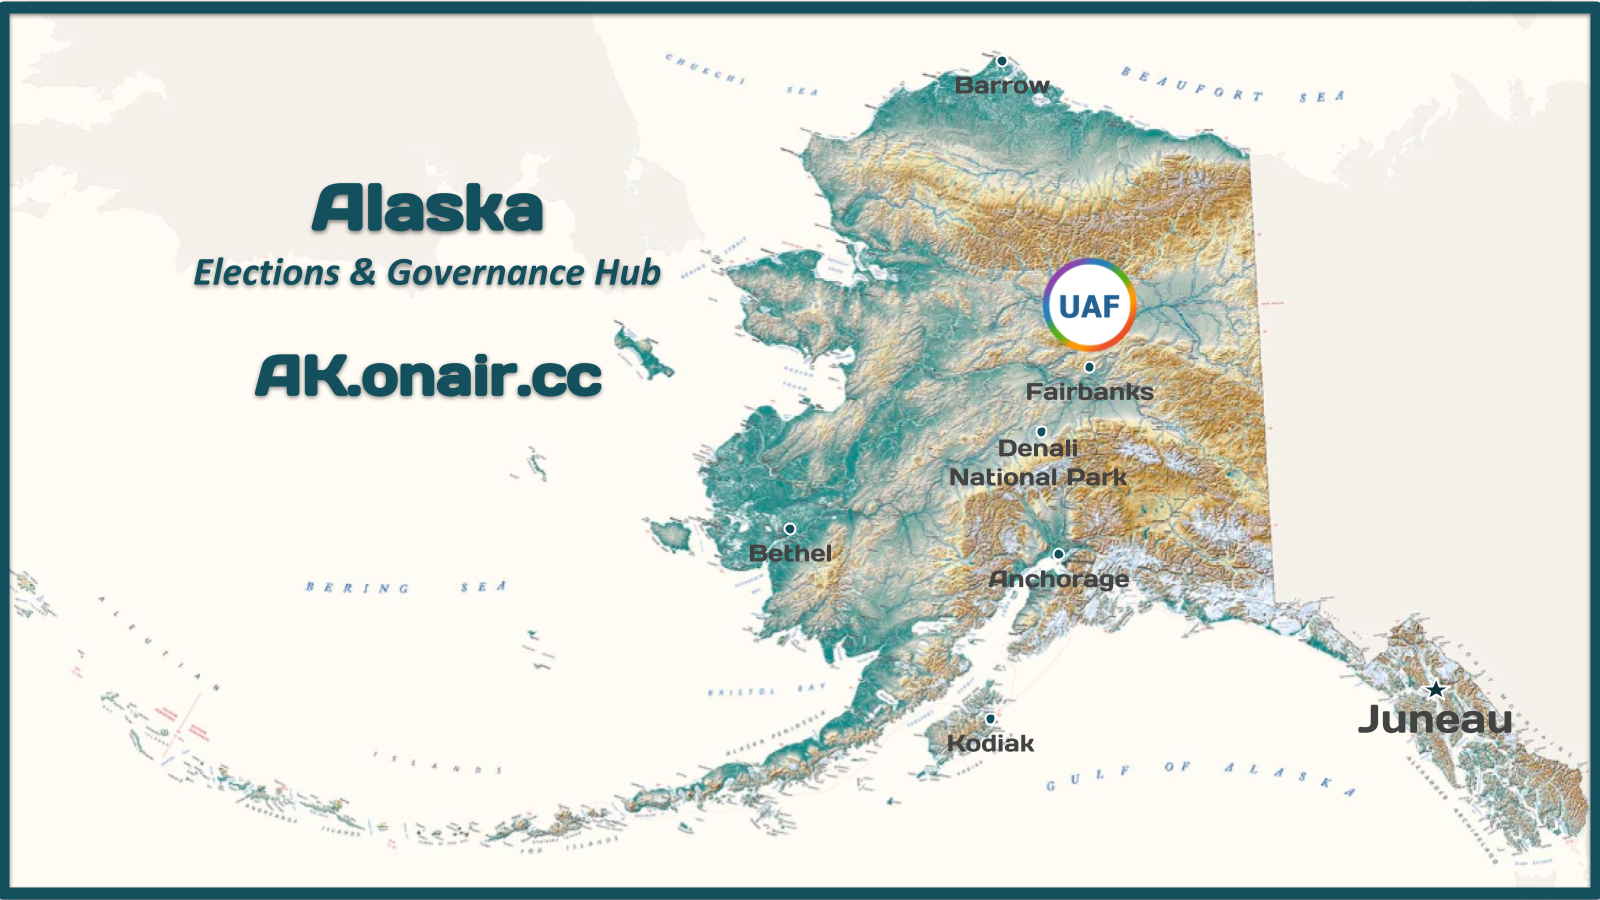 About Alaska Politics